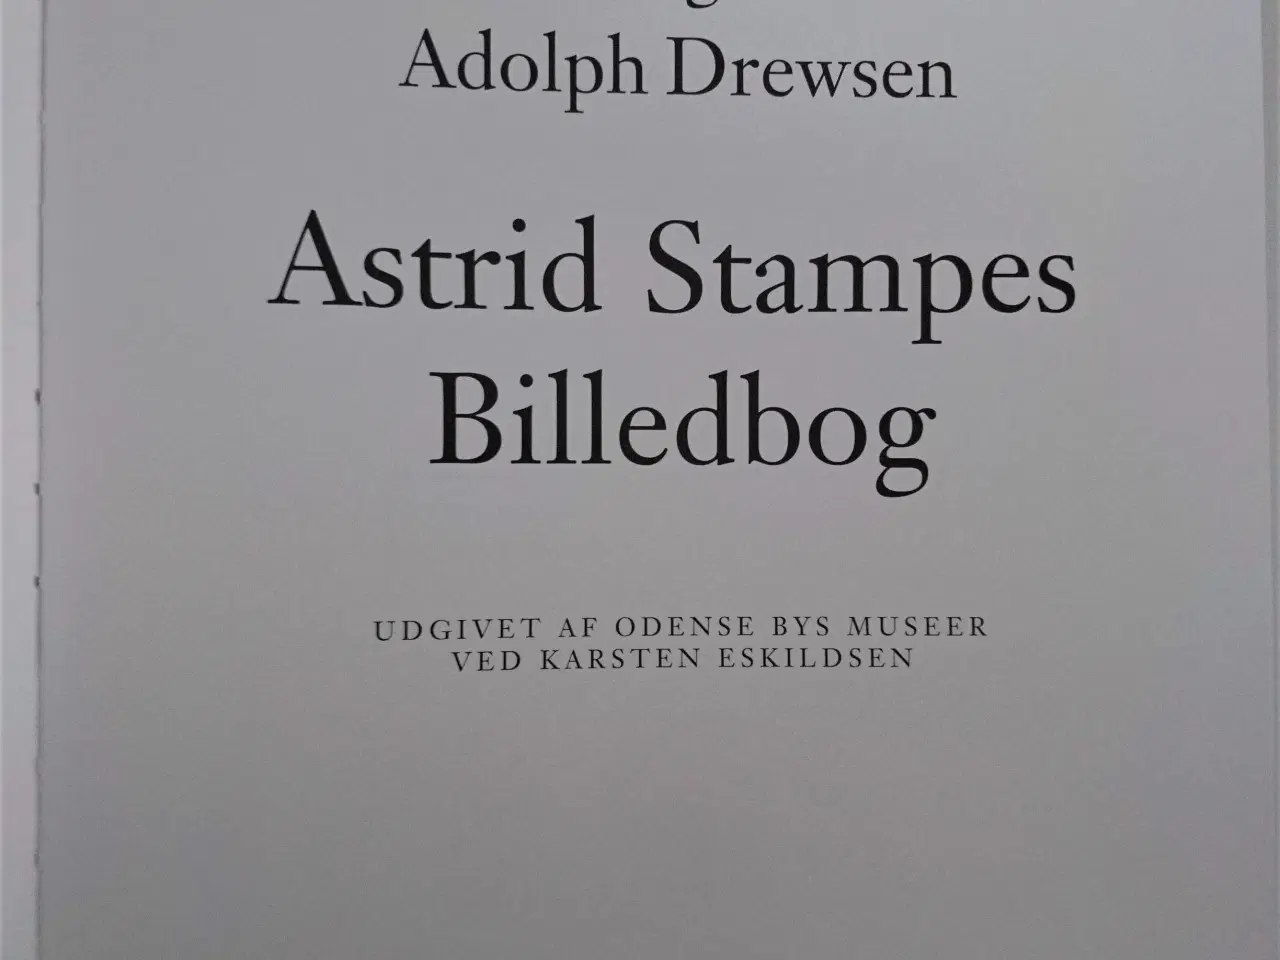 Billede 2 - Astrid Stampes billedbog Af H. C. Andersen og Adol